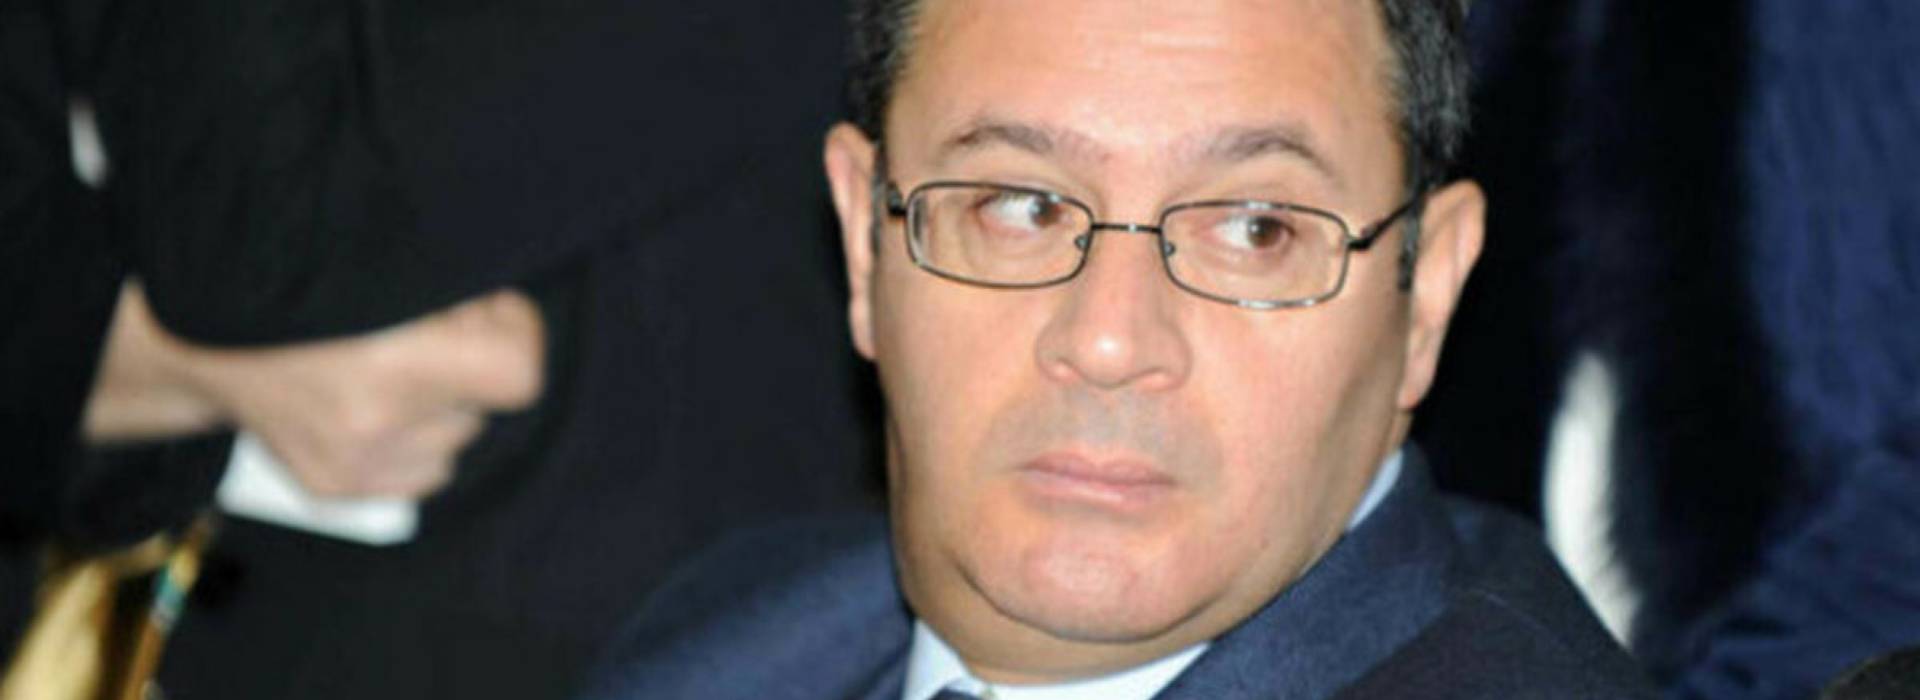 Corruzione: arrestato il pm Roberto Penna. "Patto corruttivo" in cambio di incarichi alla compagna